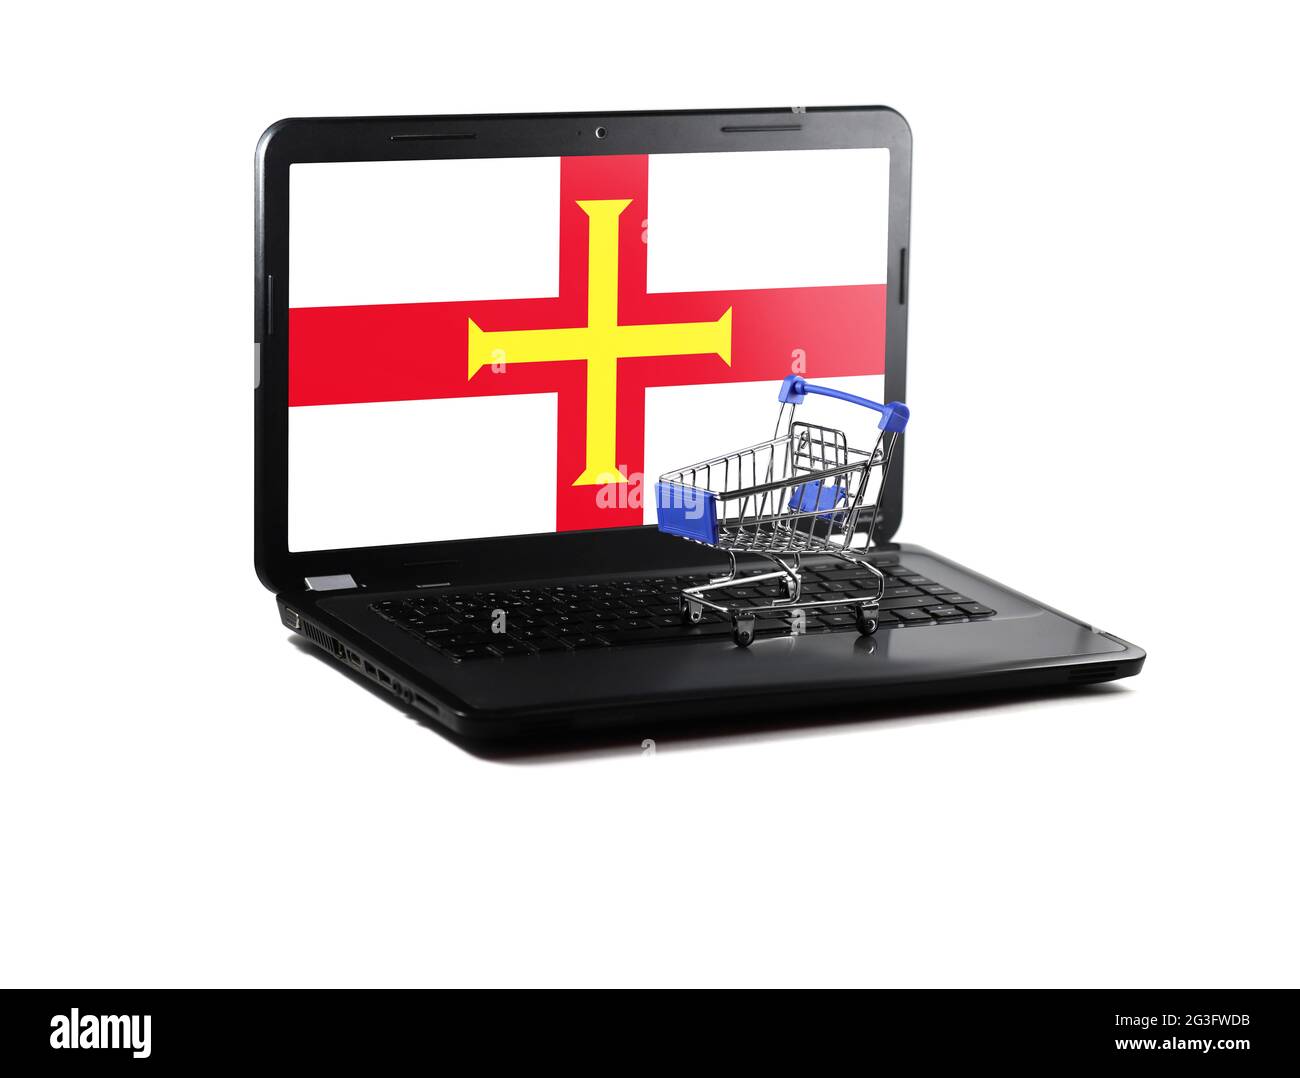 Isoliert auf weißem Hintergrund Laptop mit Guernsey Flagge auf dem Display, Online-Shopping-Verkaufskonzept Stockfoto